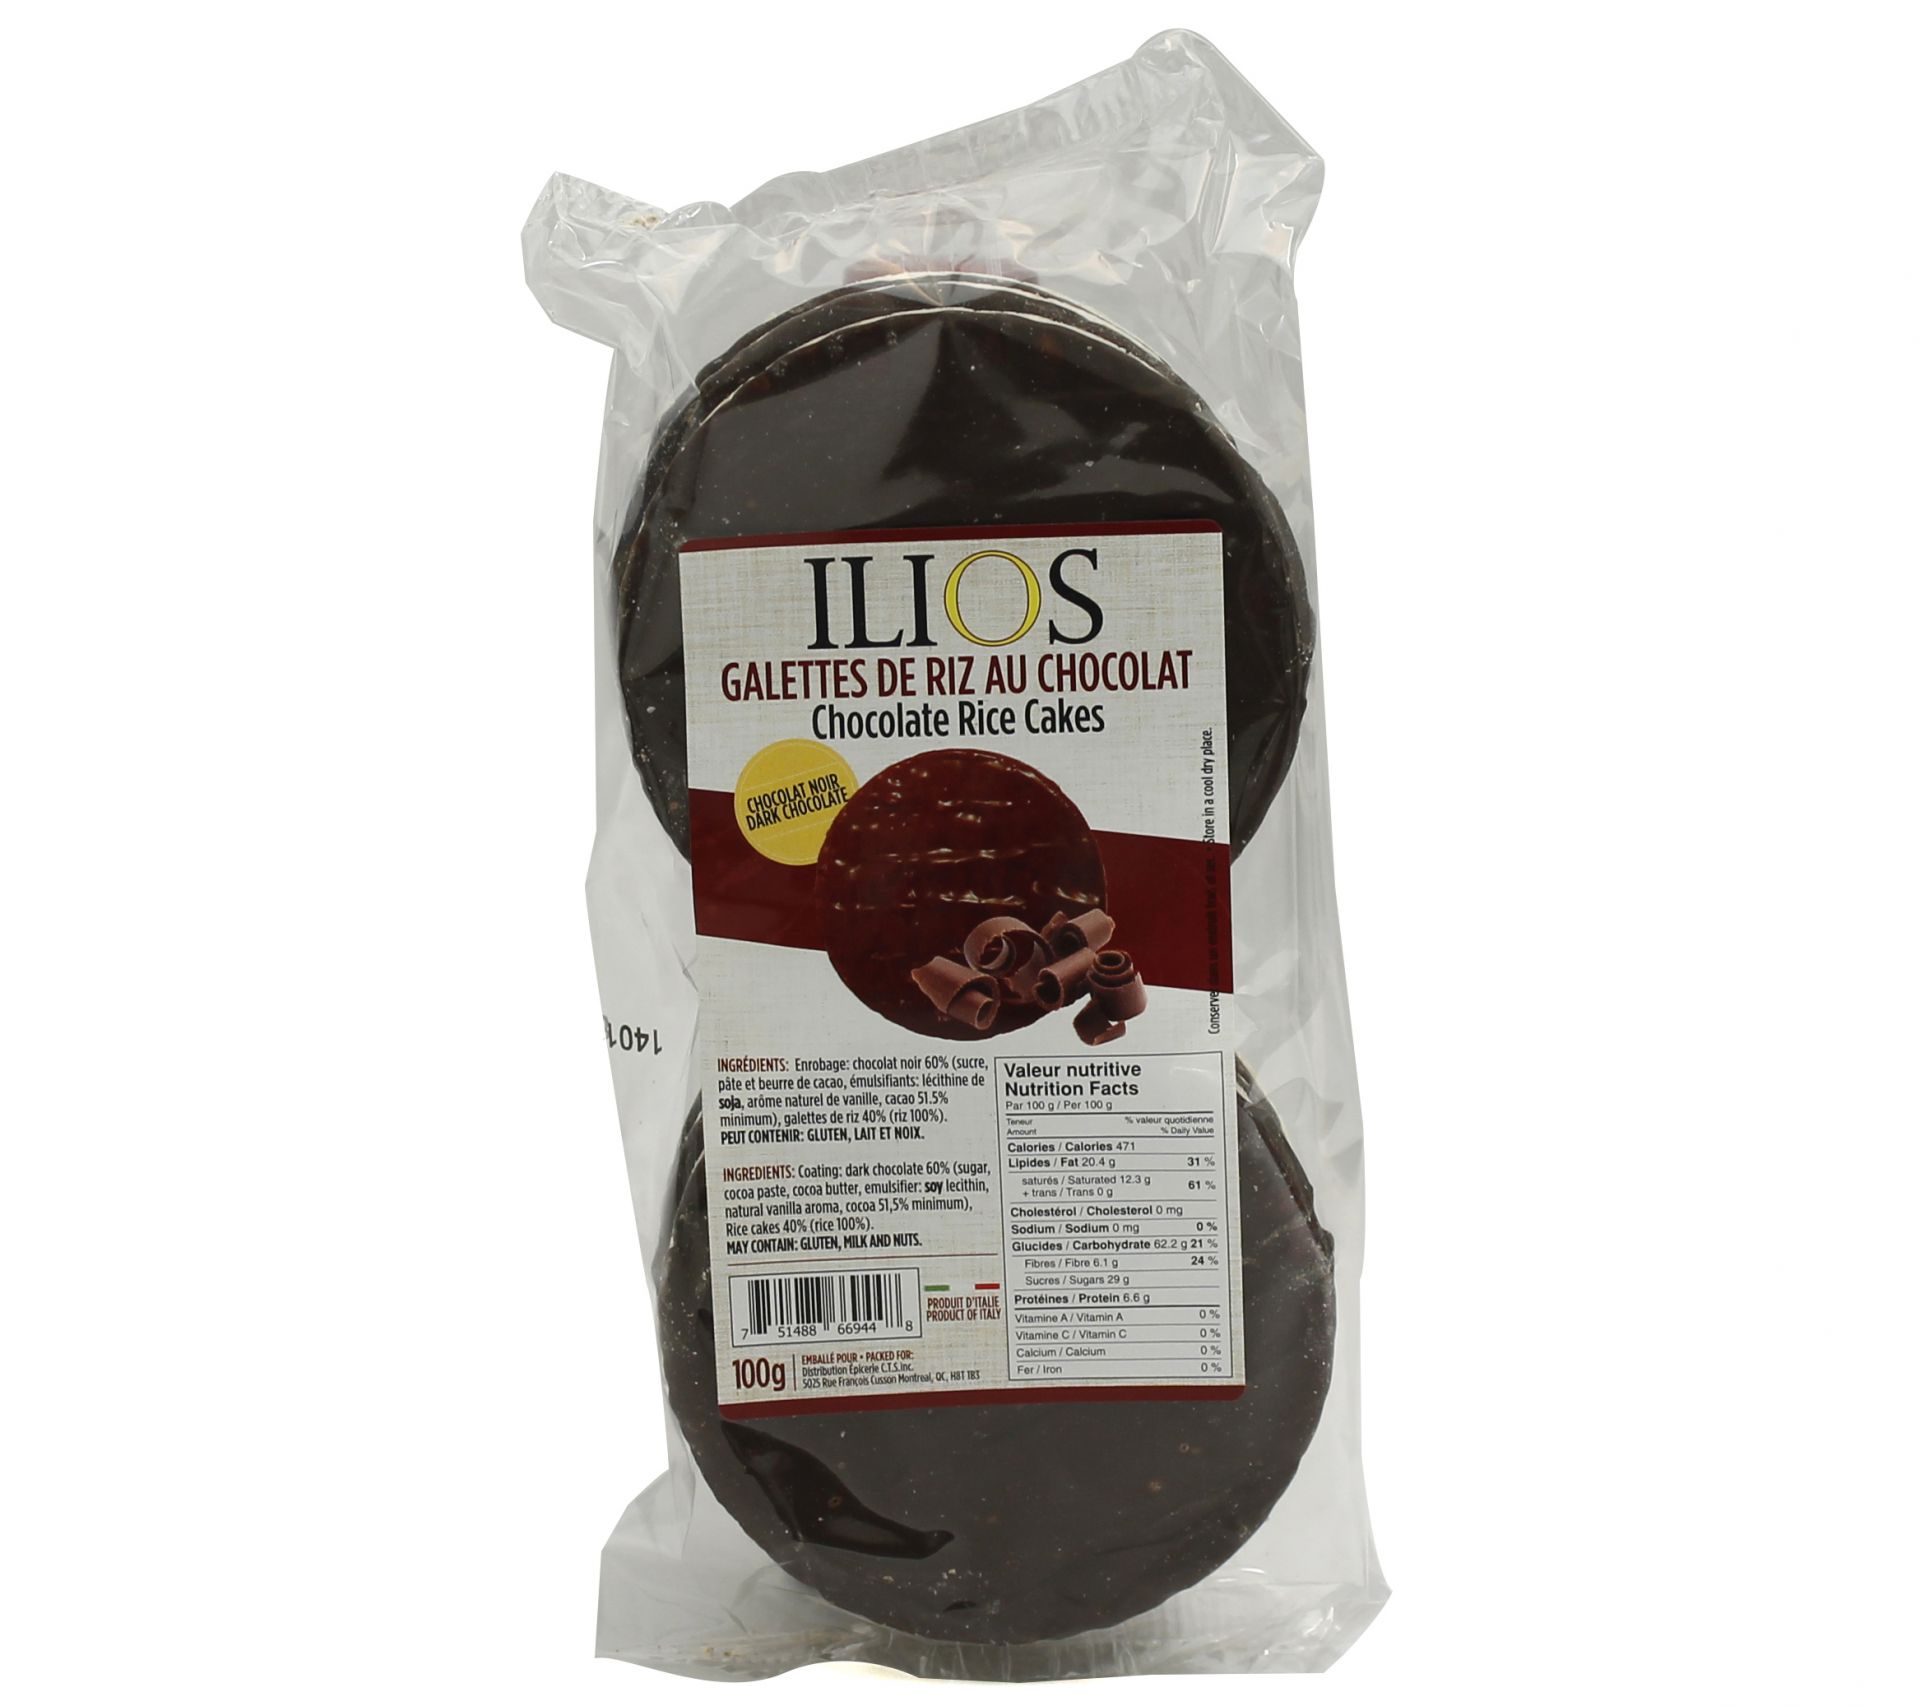 Galettes de riz au chocolat Ilios 100g - Fruiterie Potager